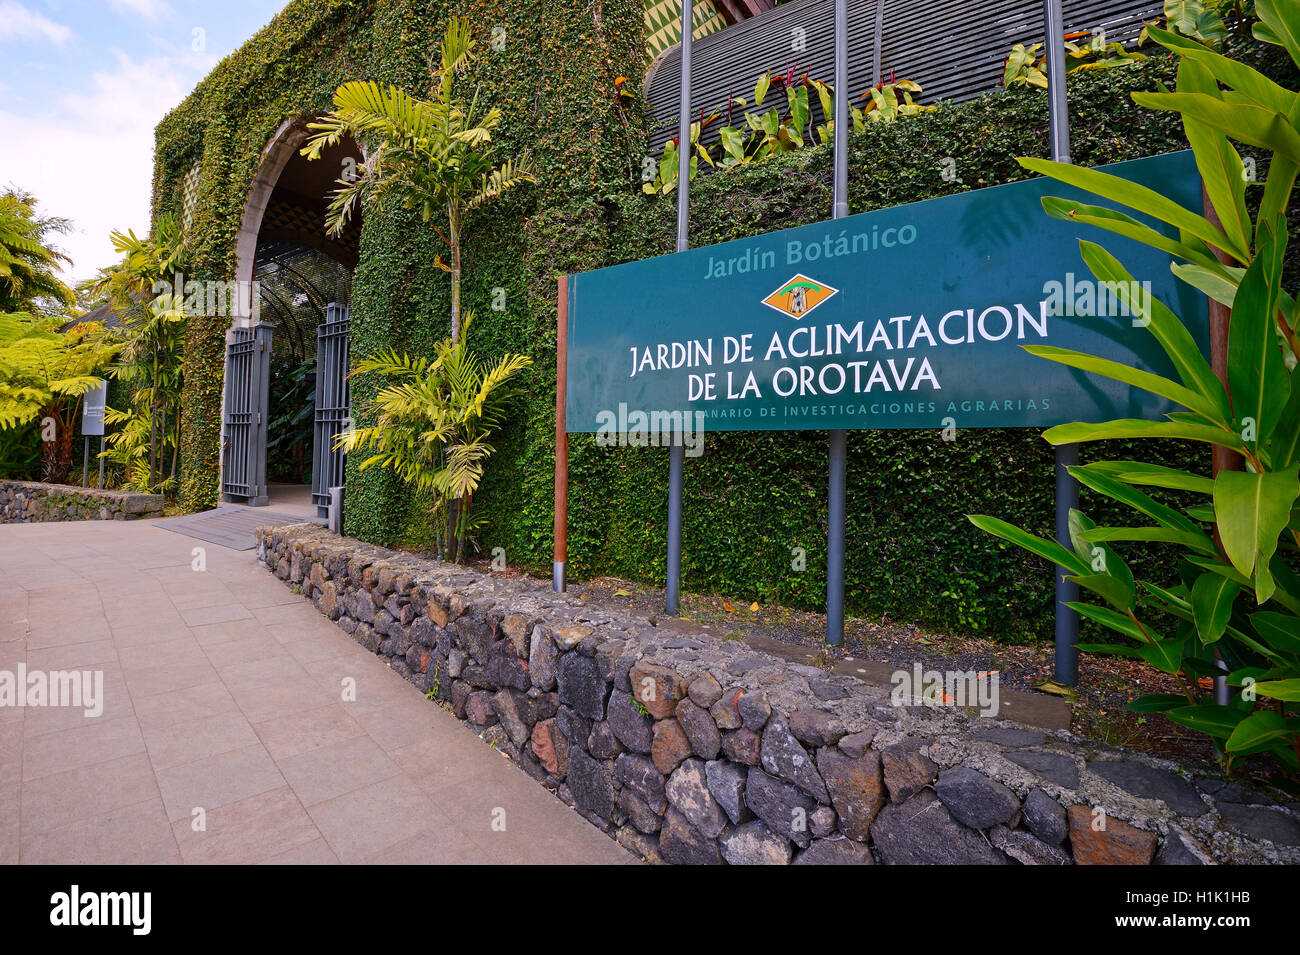 Eingang Botanischer Garten, Teneriffa Kanarische Inseln, Spanien Banque D'Images